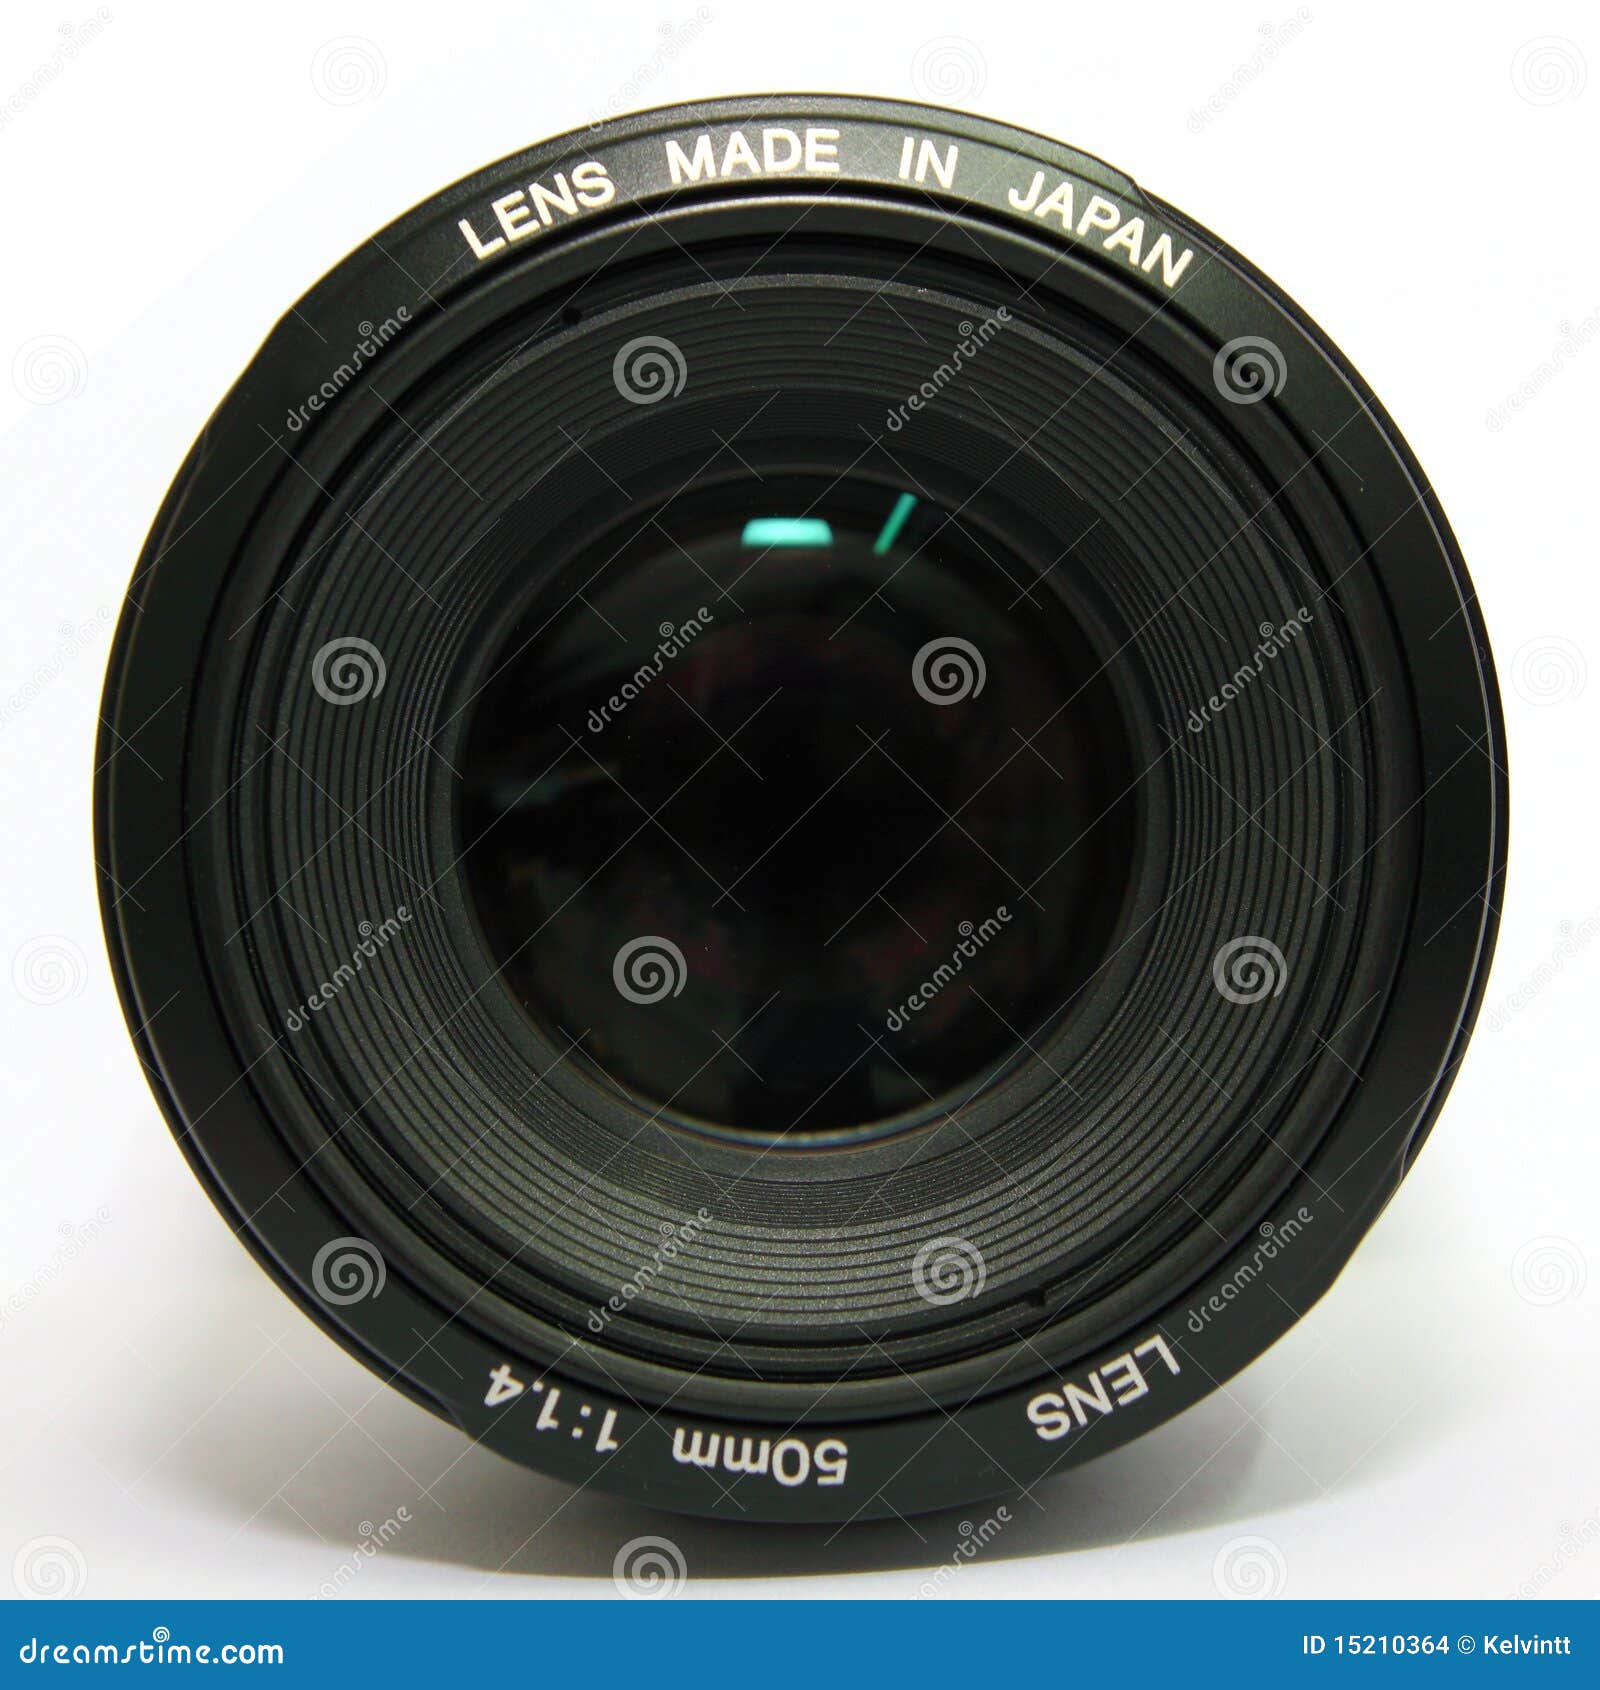 camera 50mm lens